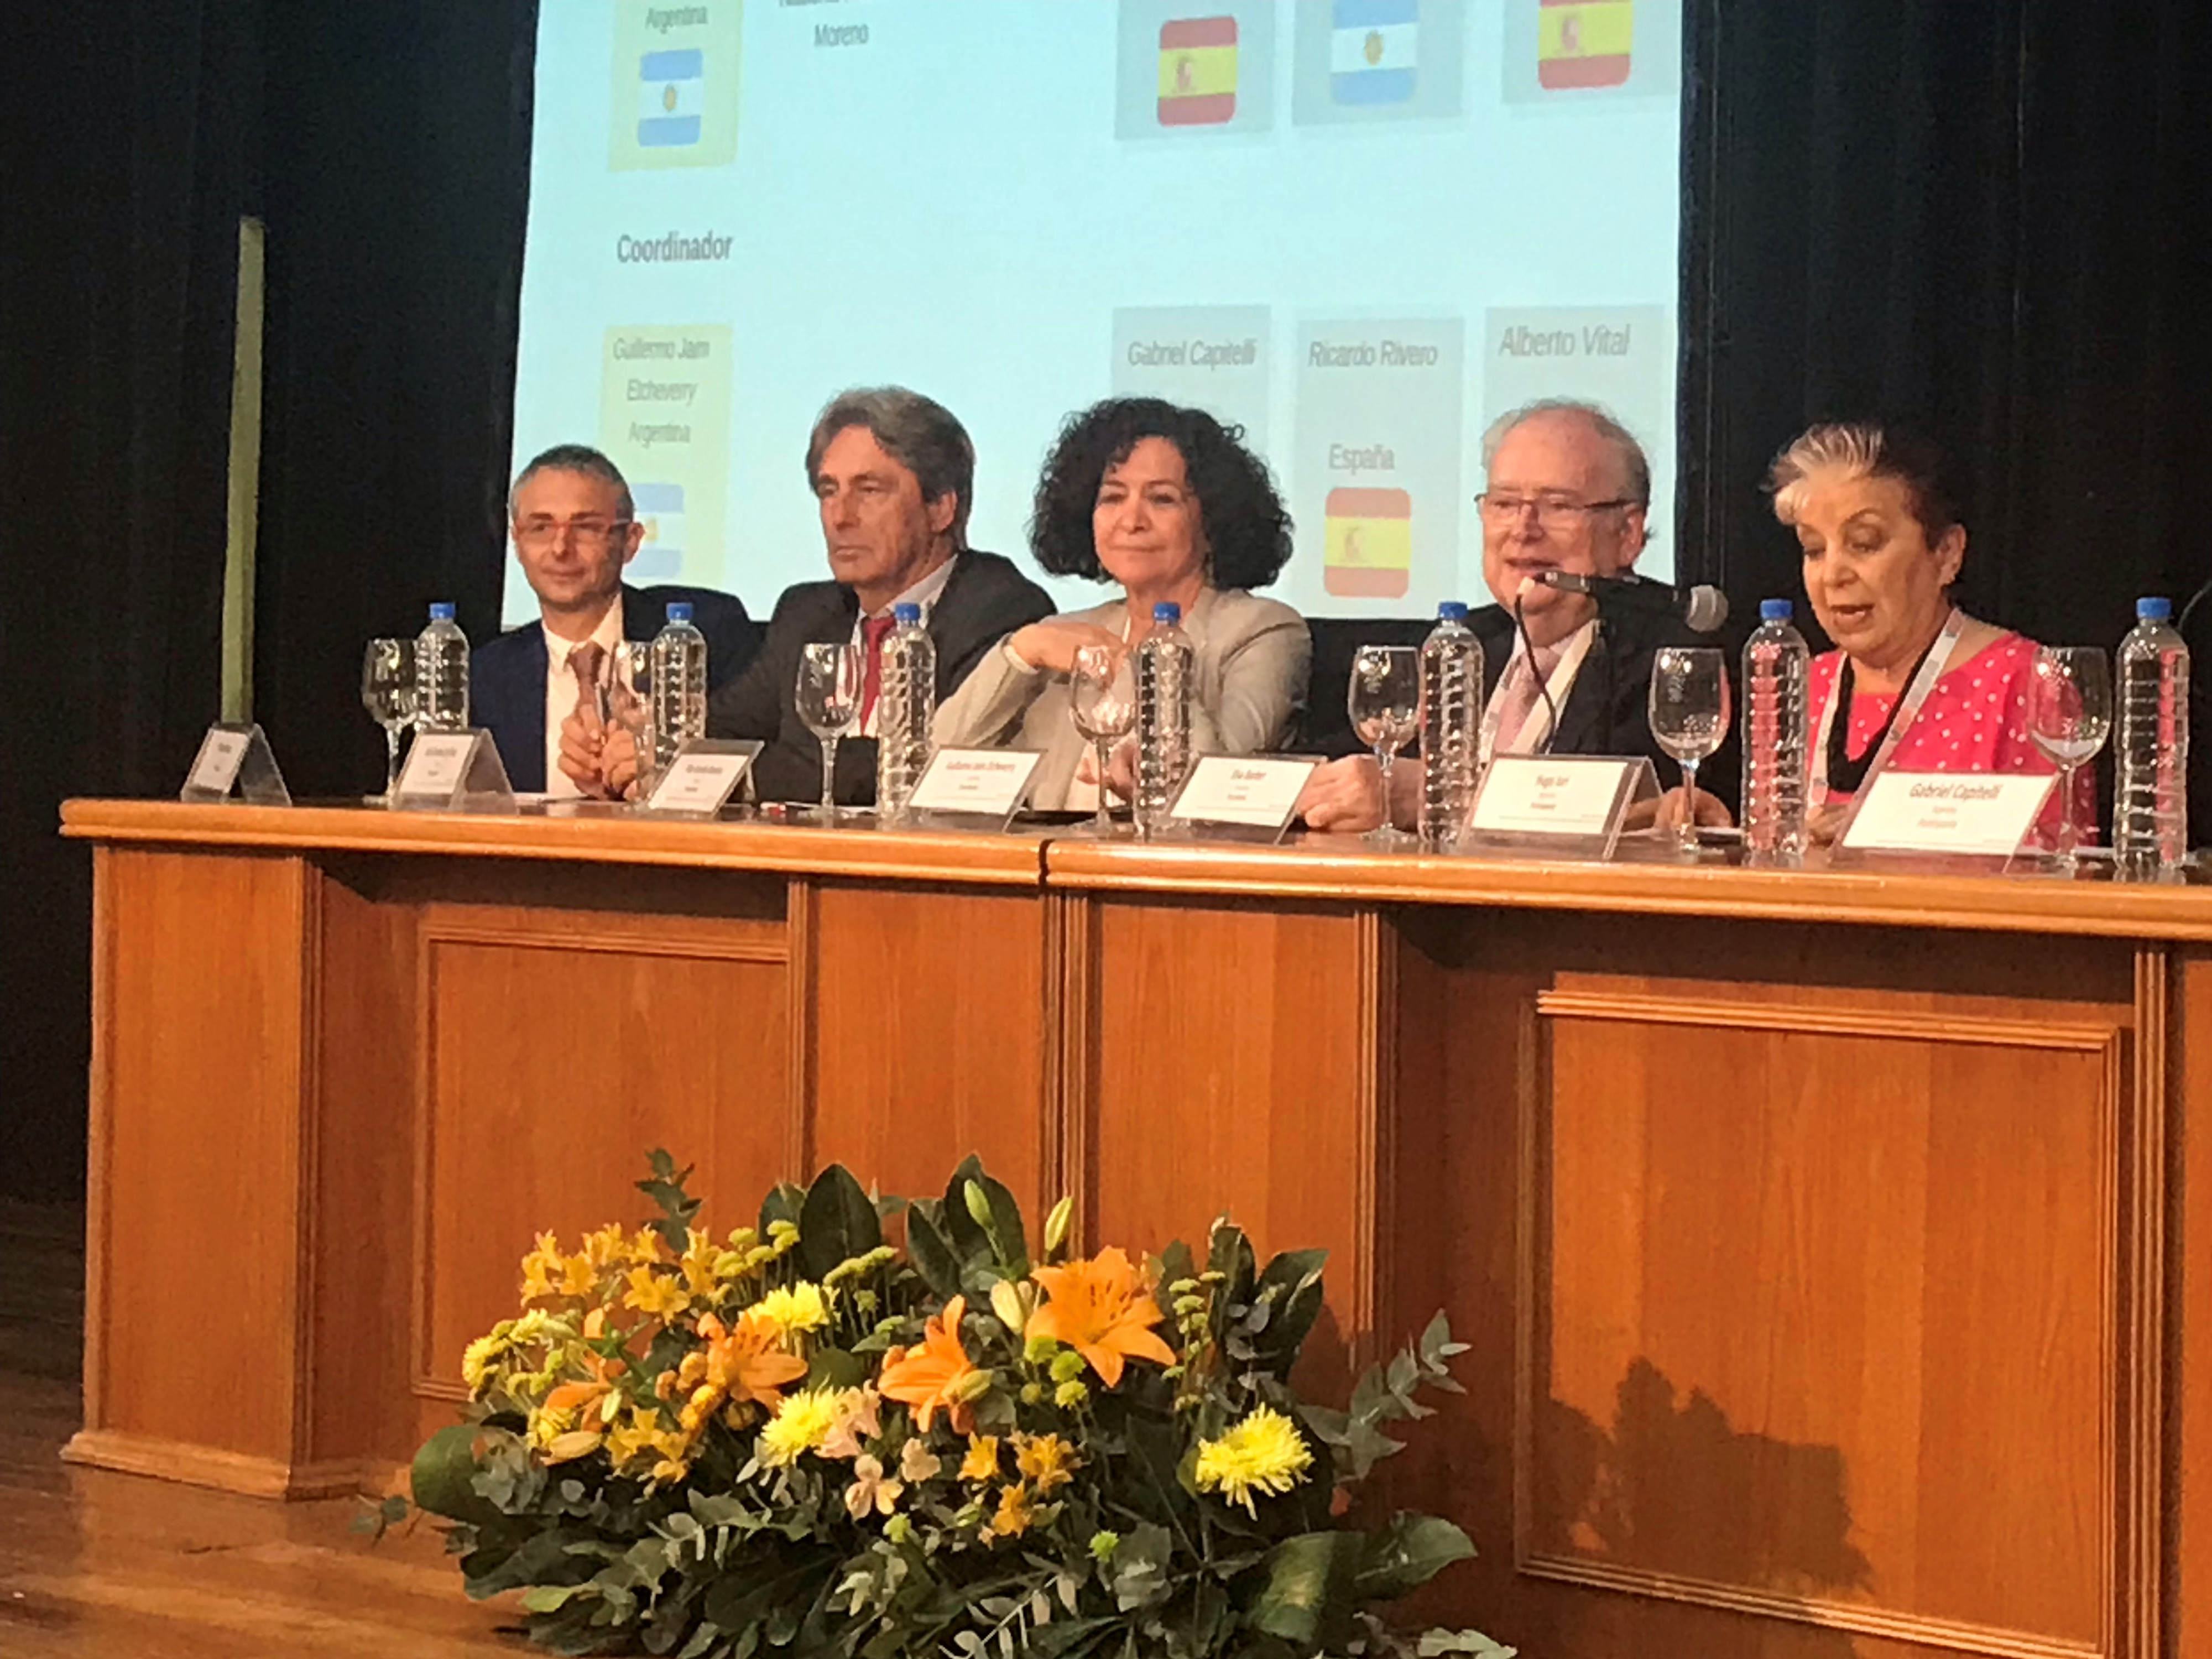 La Universidad de Salamanca participa en Argentina en el VIII Congreso Internacional de la Lengua Española